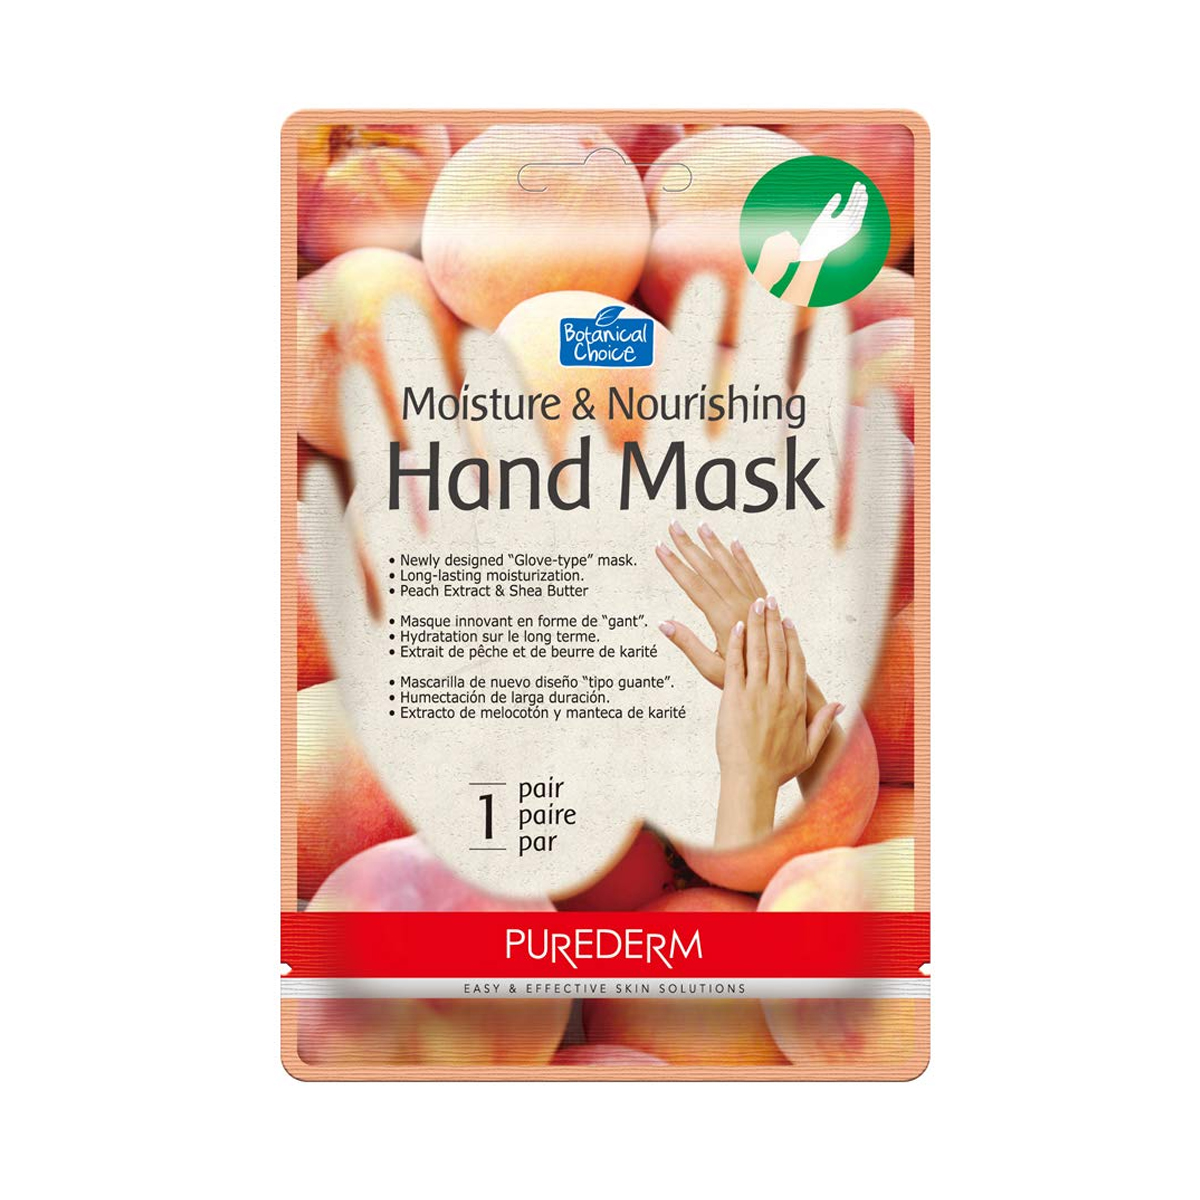 ماسک دست مرطوب کننده و مغذی~Moisture & Nourishing Hand Mask~PUREDERM